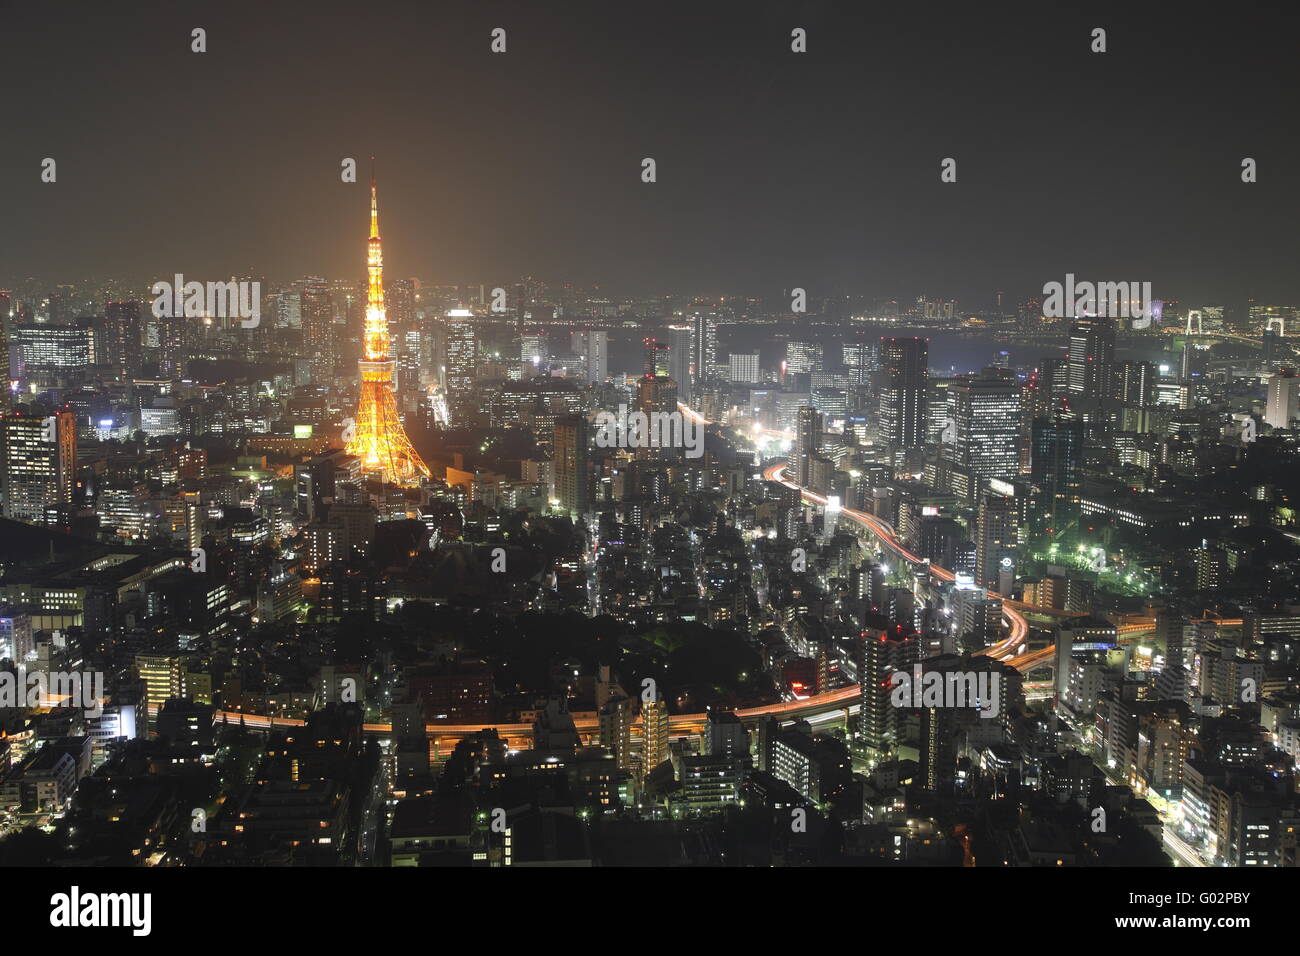 La ville de Tokyo au Japon dans la nuit Banque D'Images